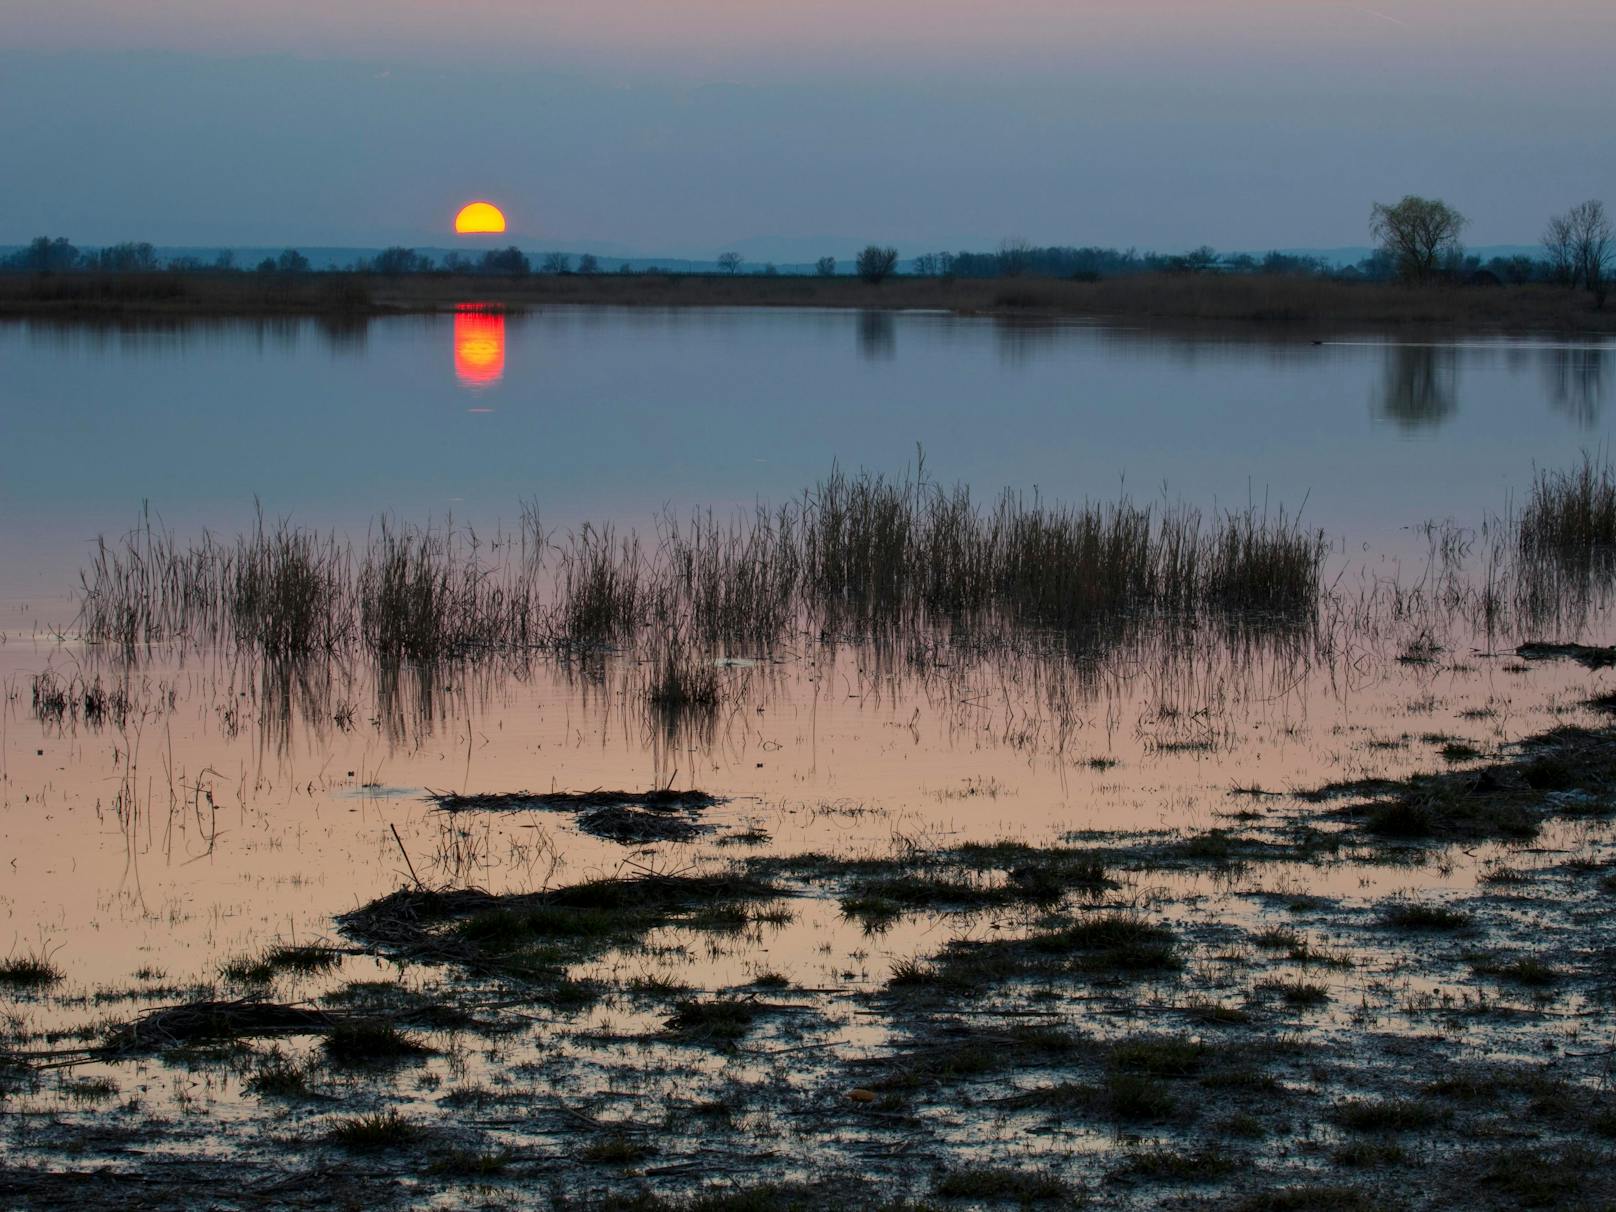 Sonnenuntergang am See. Das Bild wurde 2014 aufgenommen, da hatte die Darscho-Lacke noch mehr Wasser.